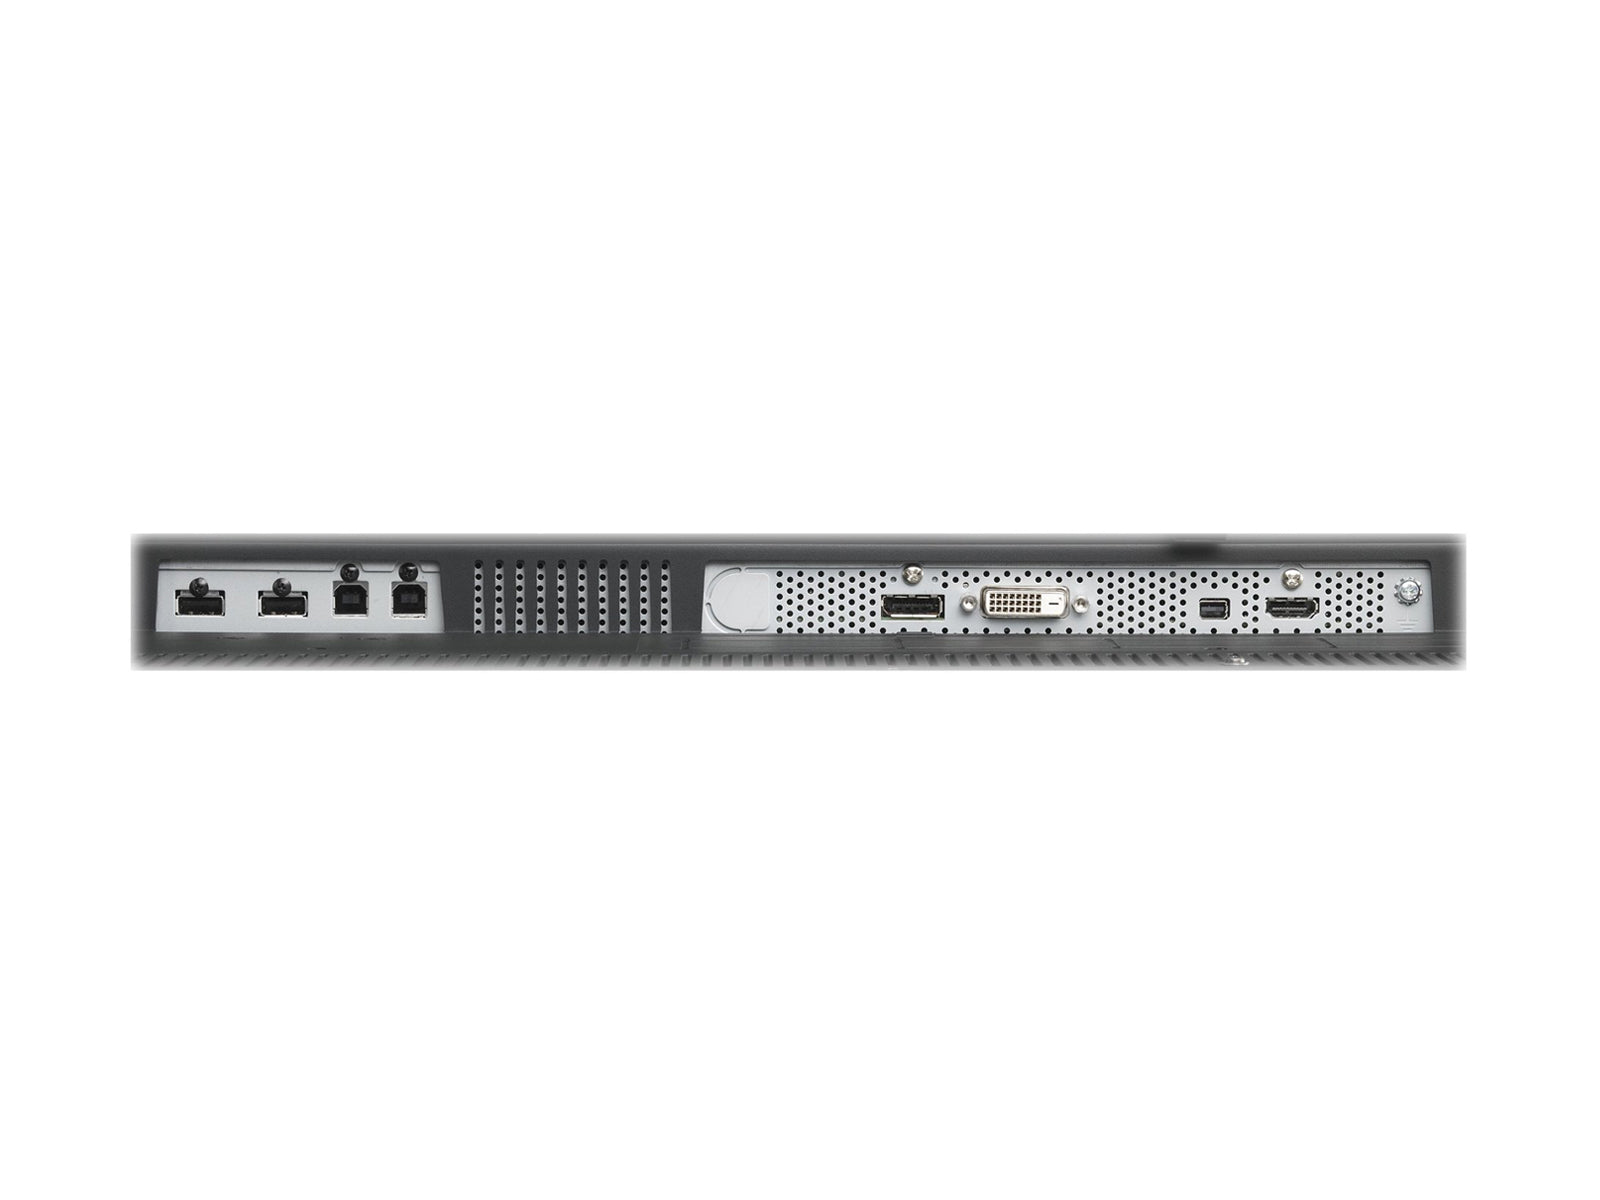 NEC MultiSync MD301C4 4MP 30 インチ カラー LED 一般放射線 PACS ディスプレイ (MD301C4) Monitors.com